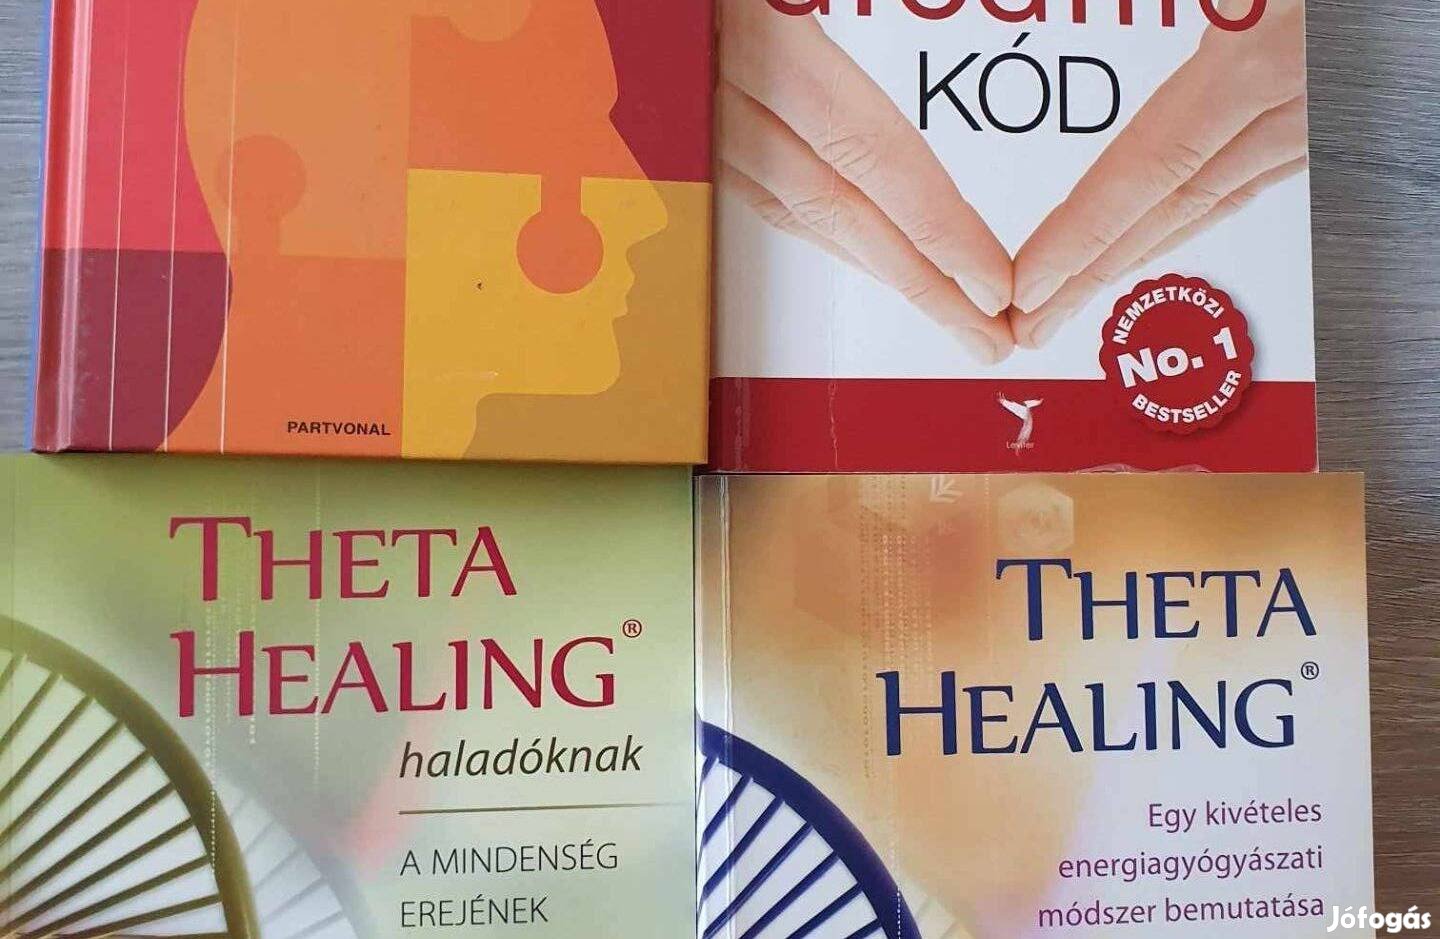 Lelki eredetű betegségek lexikona A gyógyító kód, Theta healing